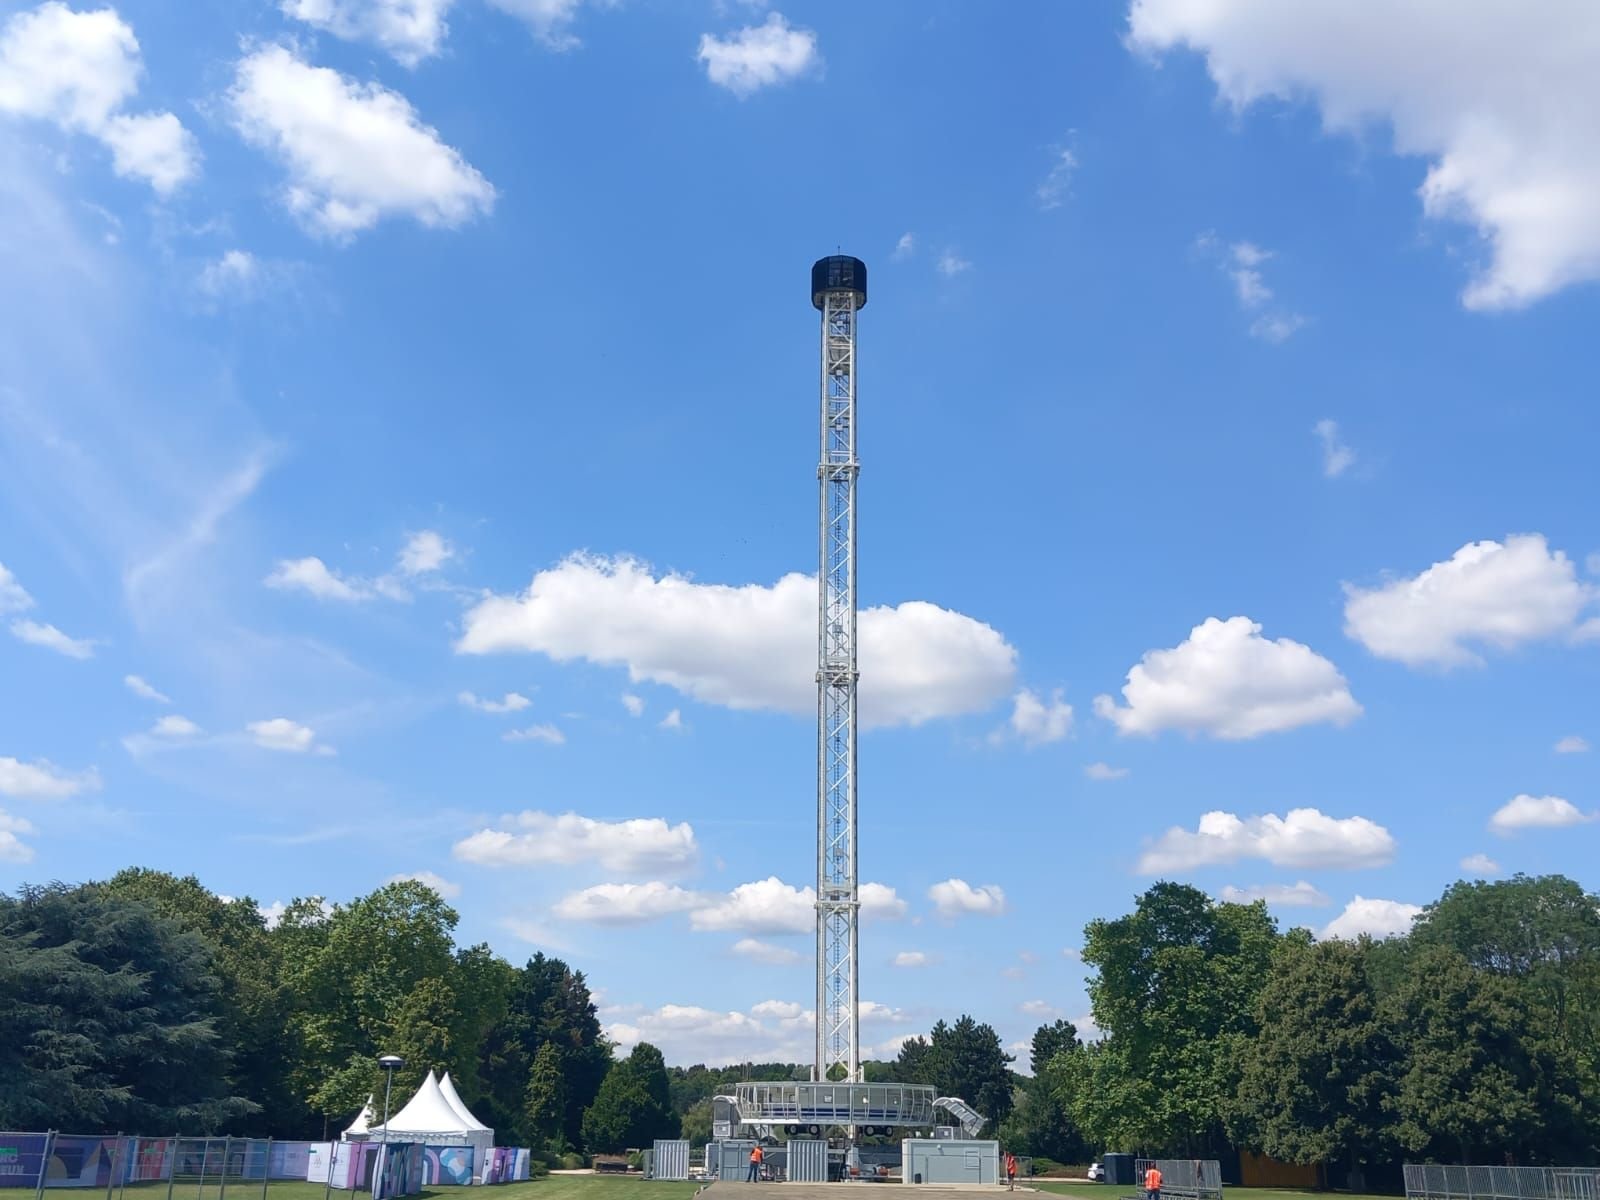 L’élément phare du site de célébrations est la City Skyliner. Cette tour éphémère, installée pour la première fois en Île-de-France à l’occasion des Jeux, est située au centre du parc.